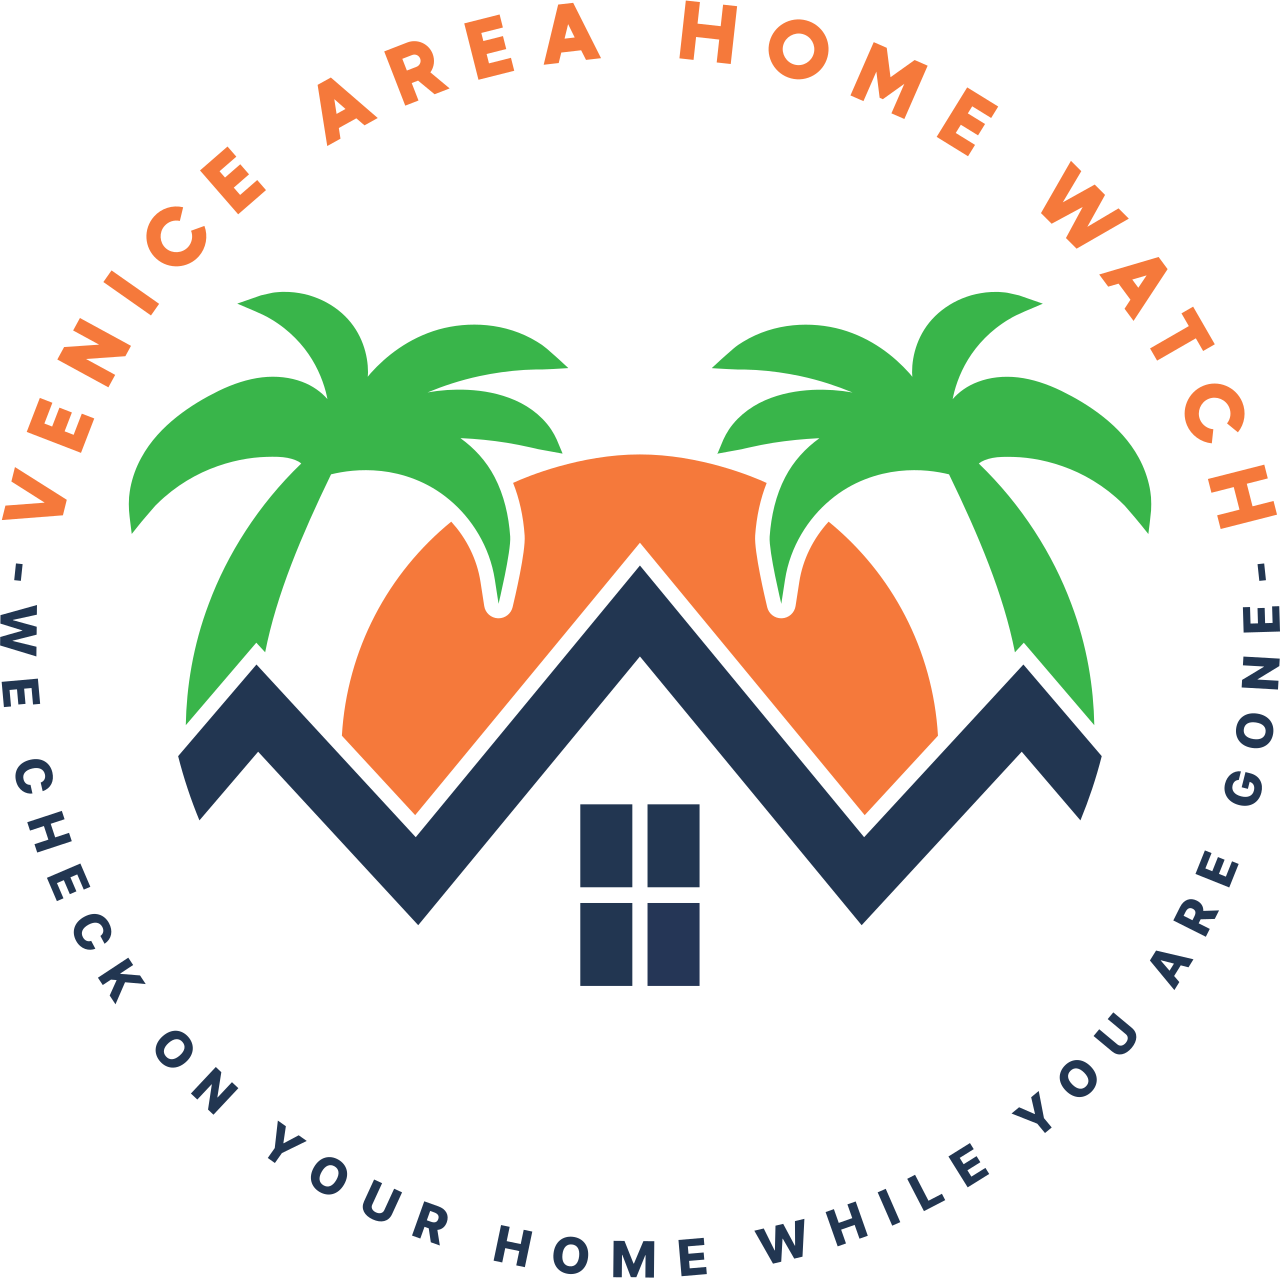 VENICE AREA HOME WATCH's logo